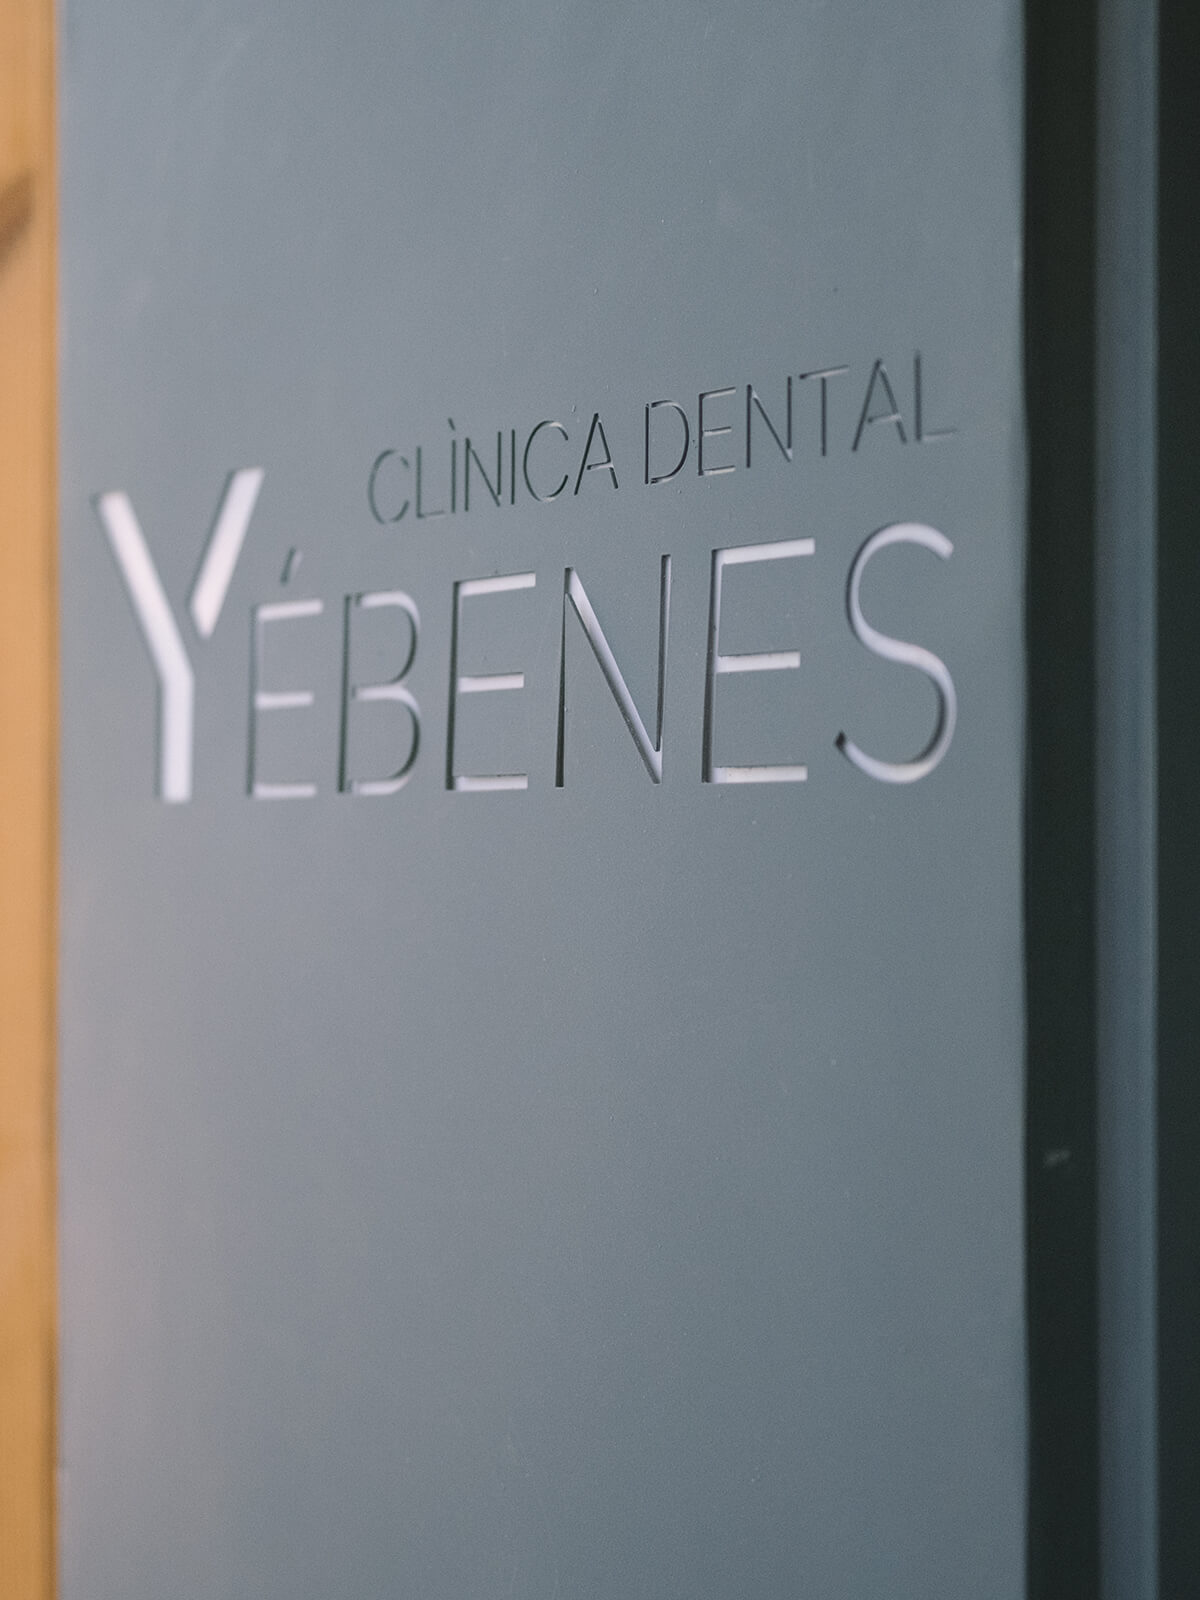 Bienvenido a Yébenes Clínica Dental